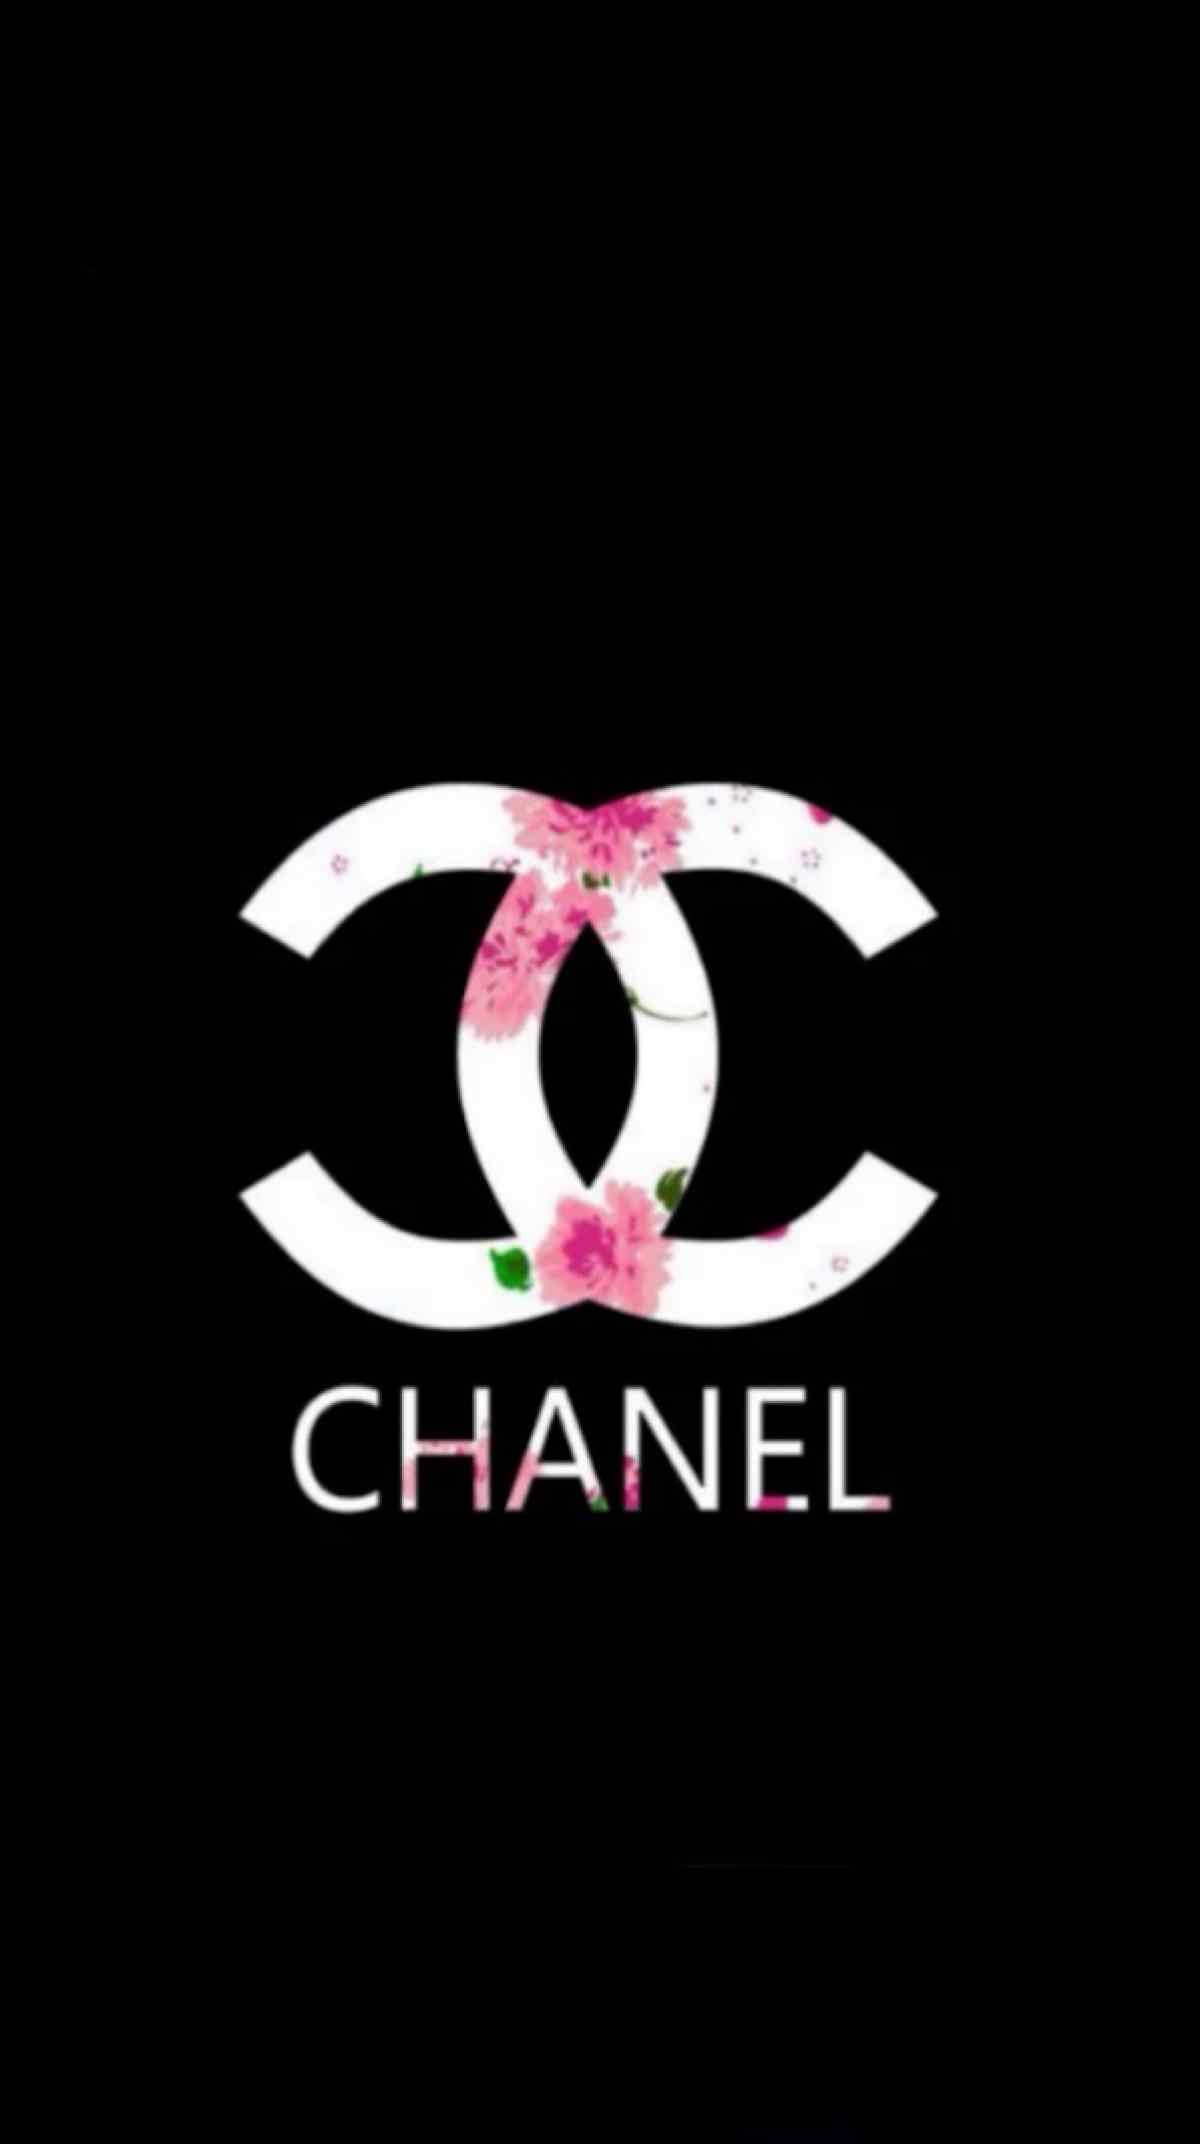 香奈儿chanel唯美花朵logo图片手机壁纸